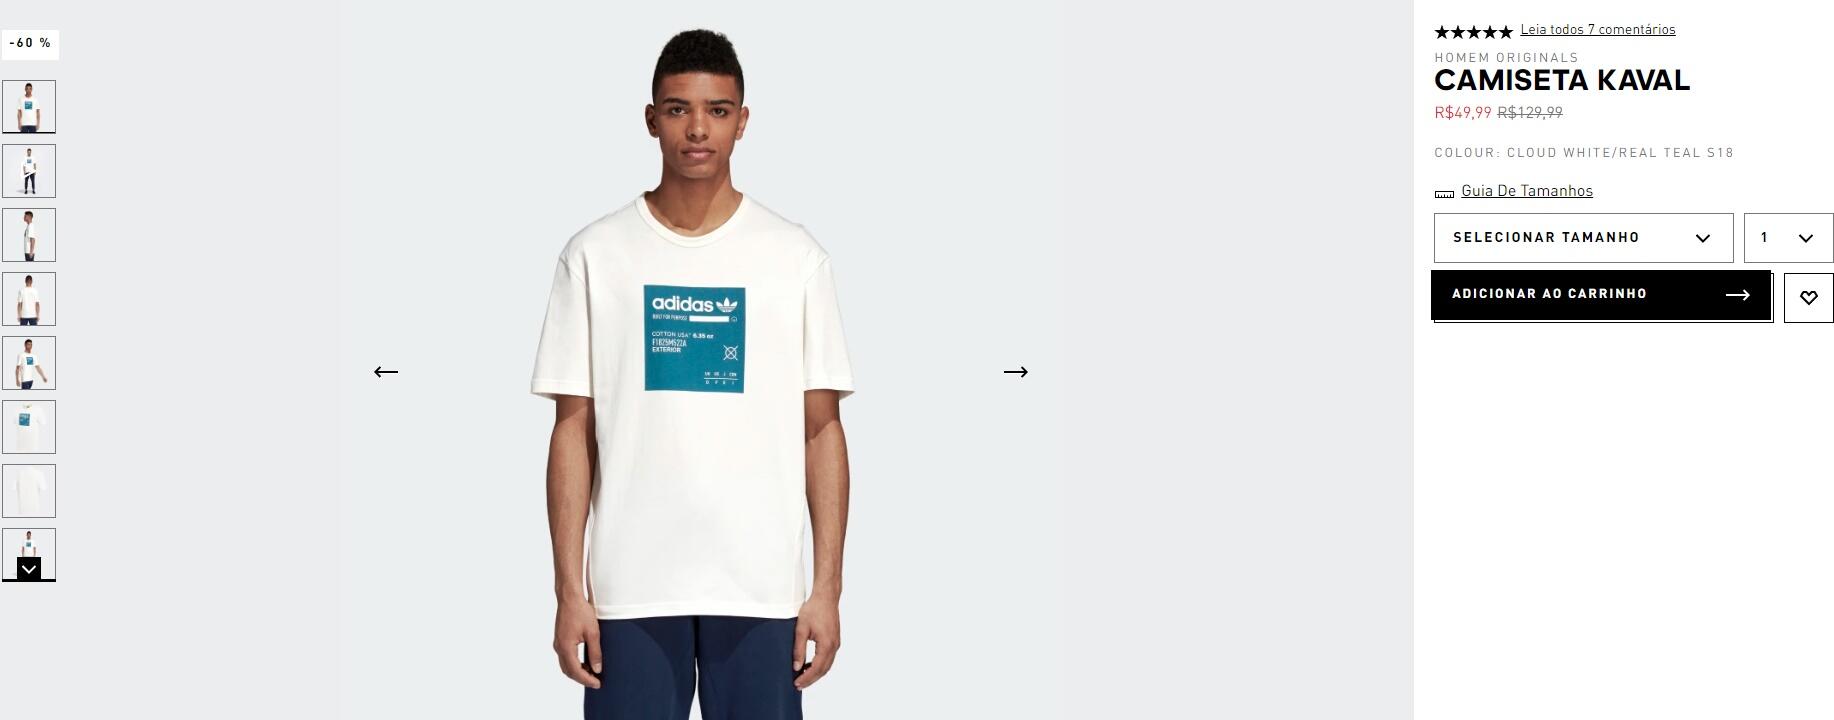 Camiseta kaval - Adidas com desconto